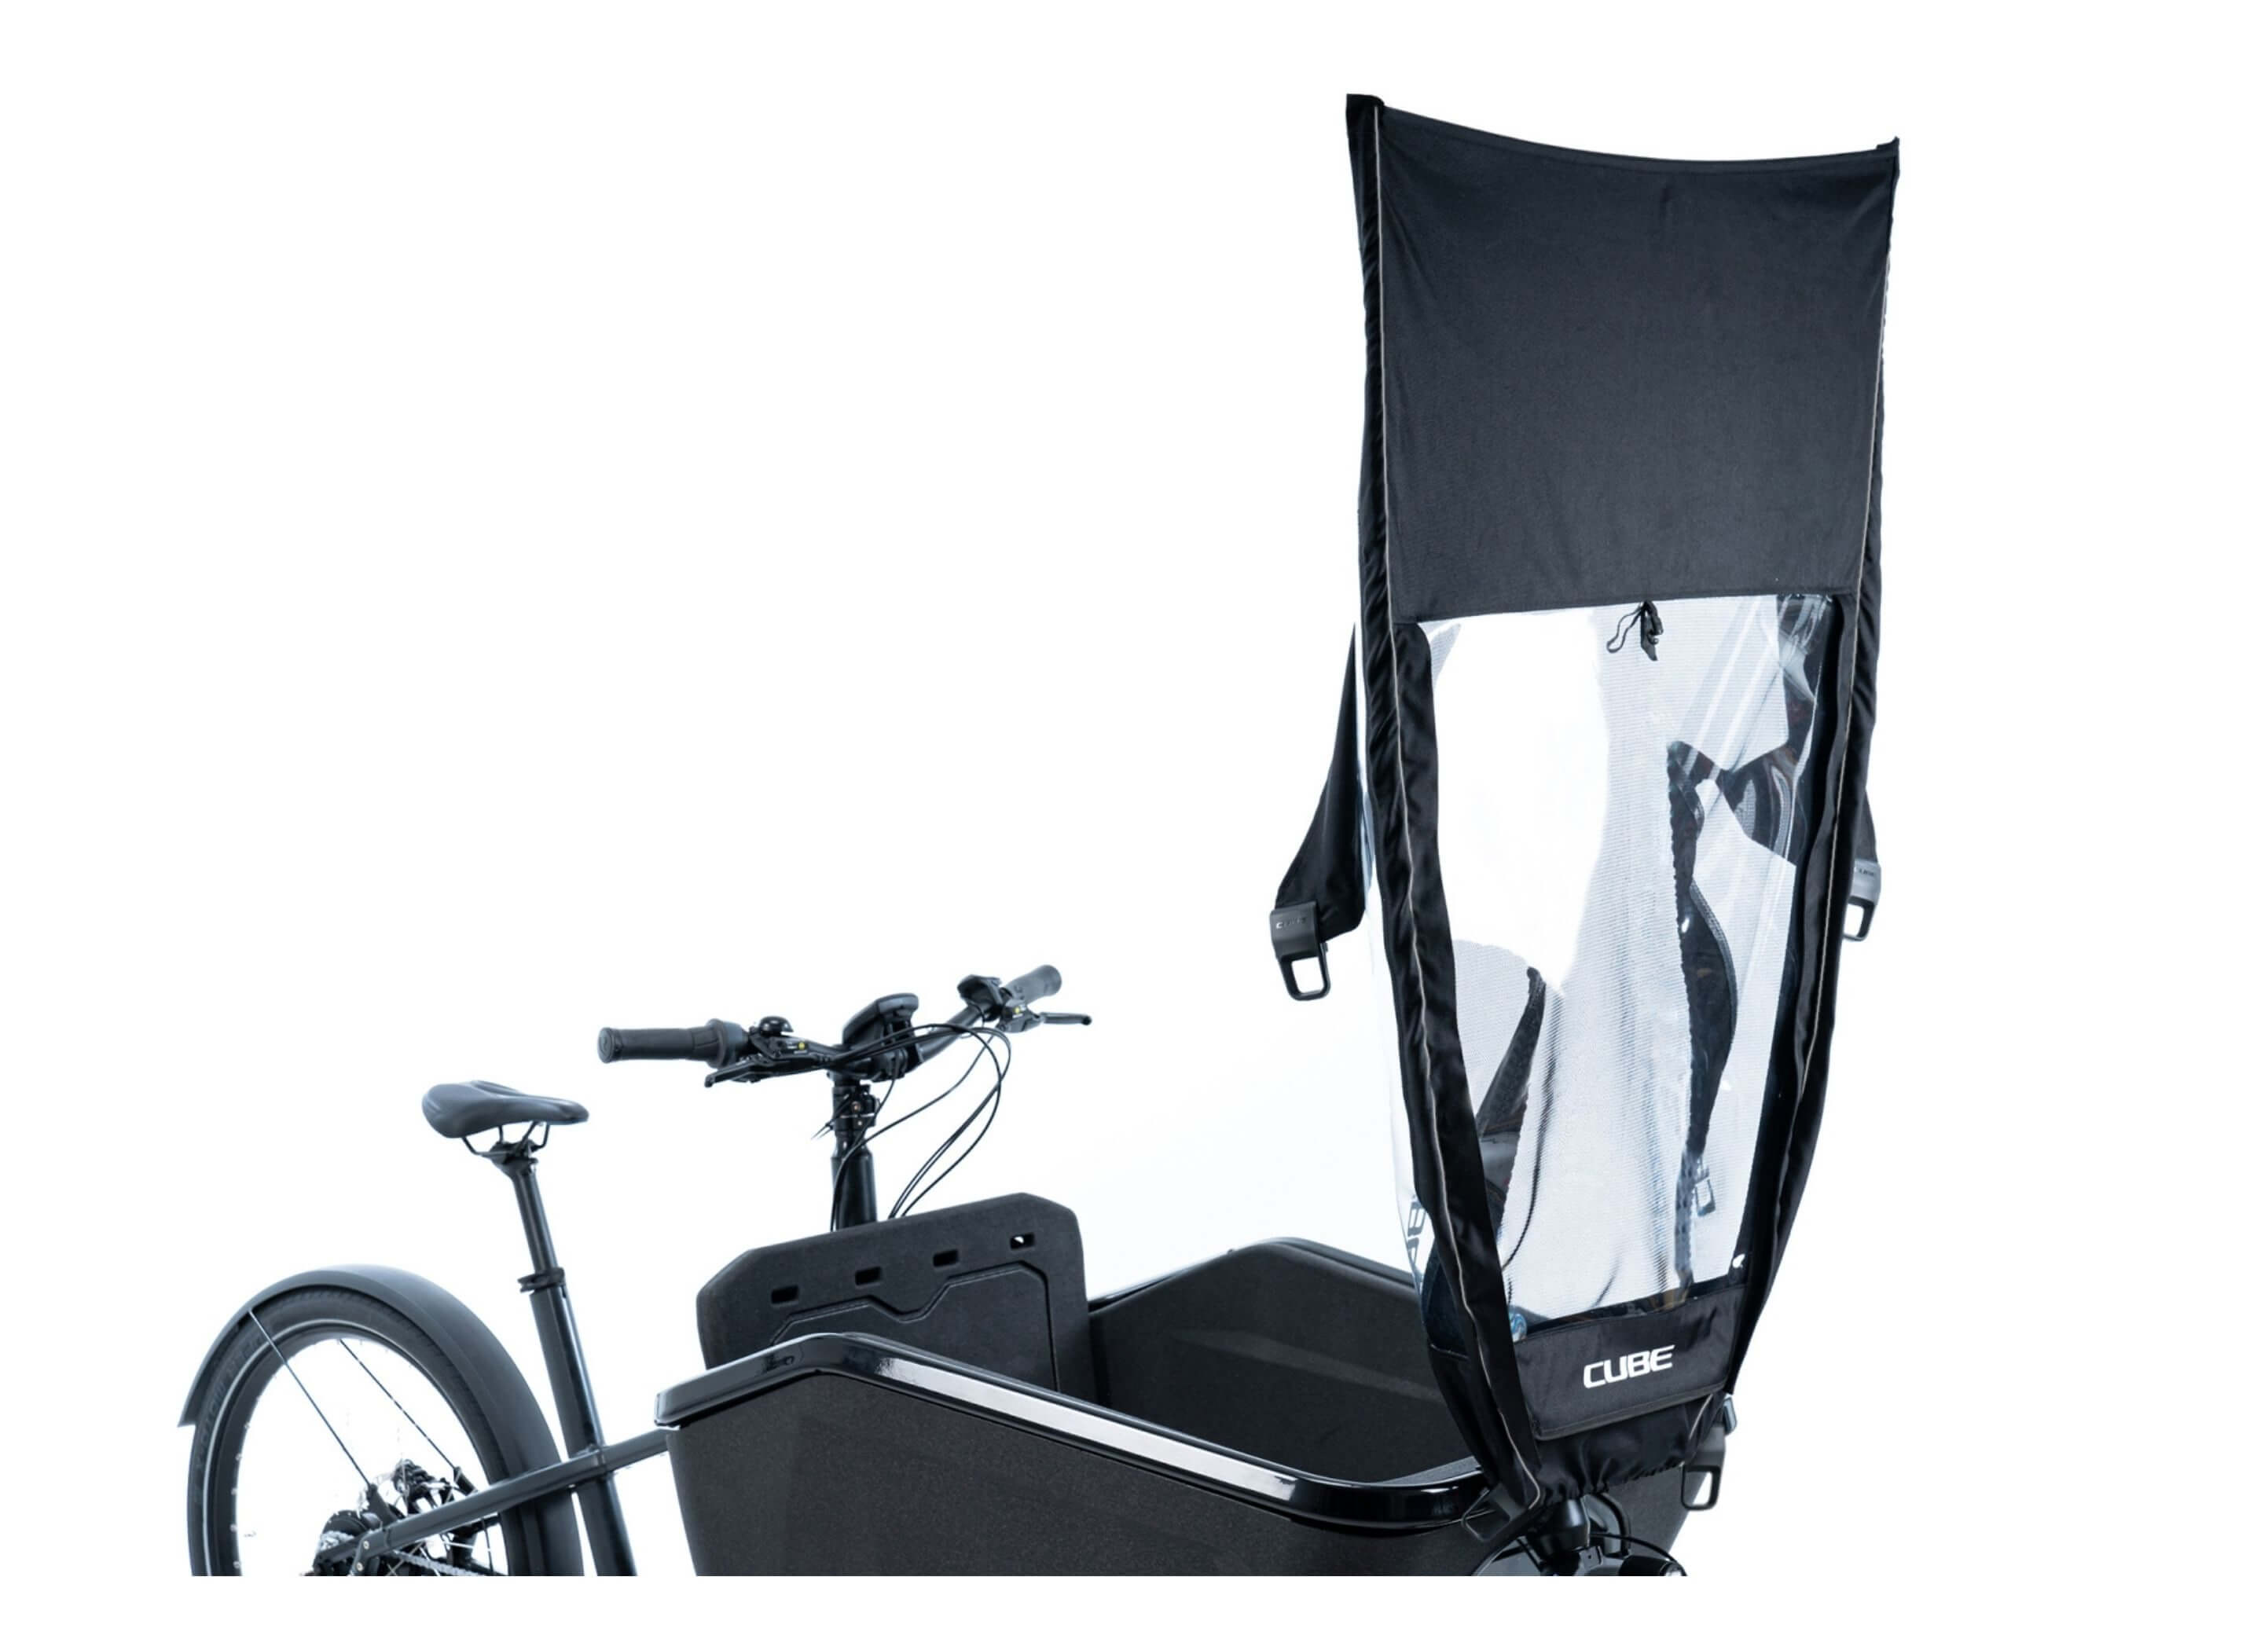 Housse de pluie Cube pour vélo Cargo électrique.